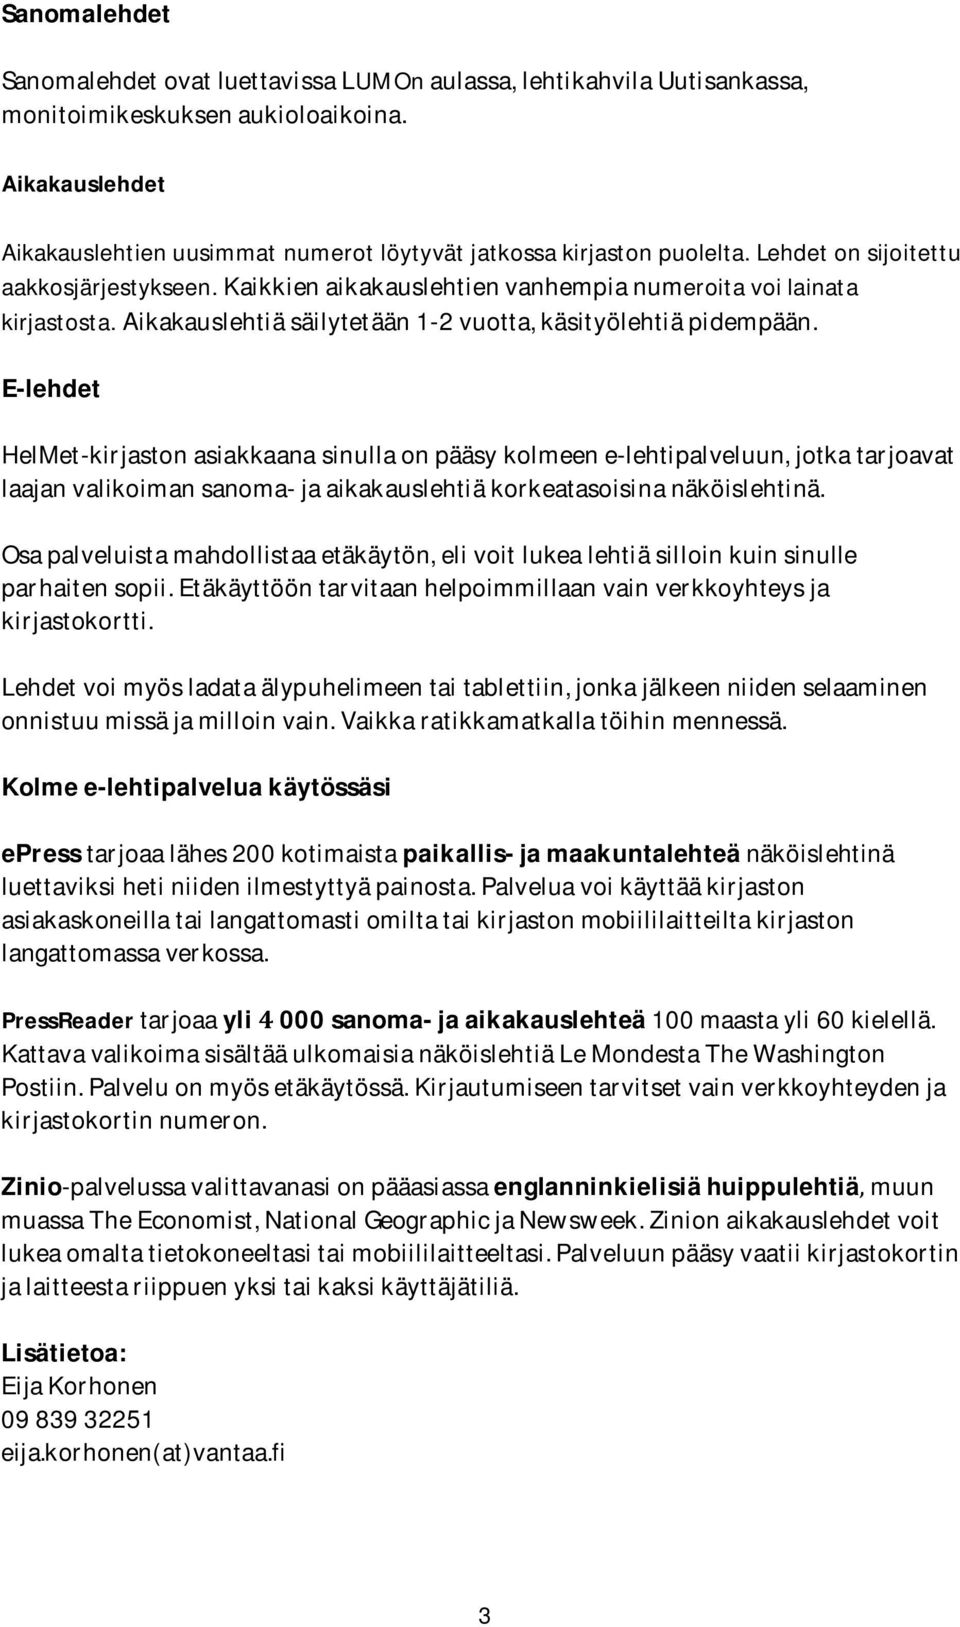 E-lehdet HelMet-kirjastonasiakkaanasinullaonpääsykolmeene-lehtipalveluun,jotkatarjoavat laajanvalikoimansanoma-jaaikakauslehtiäkorkeatasoisinanäköislehtinä.